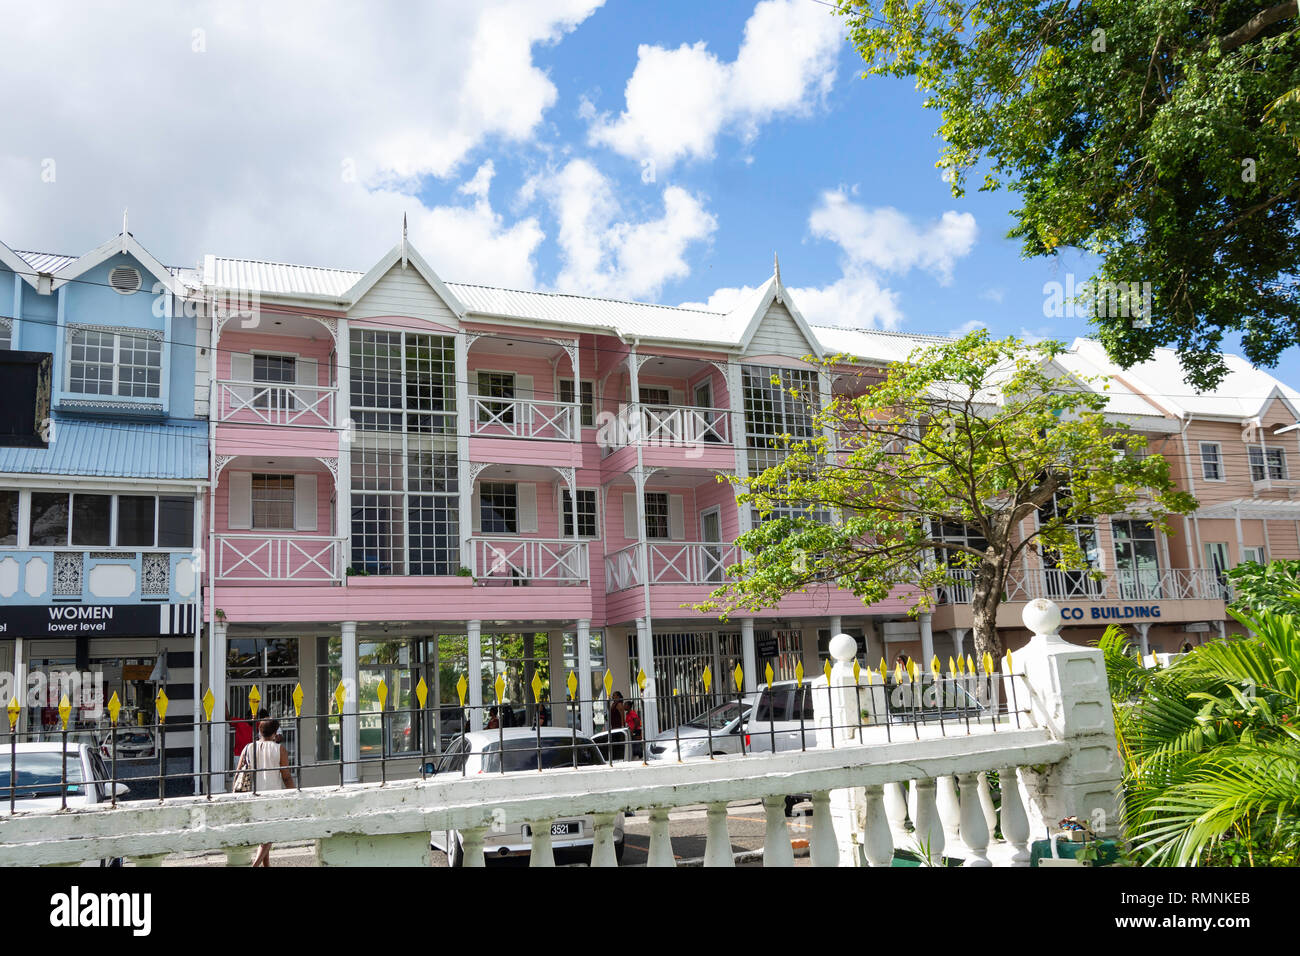 Im französischen Stil, historischen Gebäude aus Holz, Brasilien Straße, Derek Walcott Square, Castries, St. Lucia, Kleine Antillen, Karibik Stockfoto